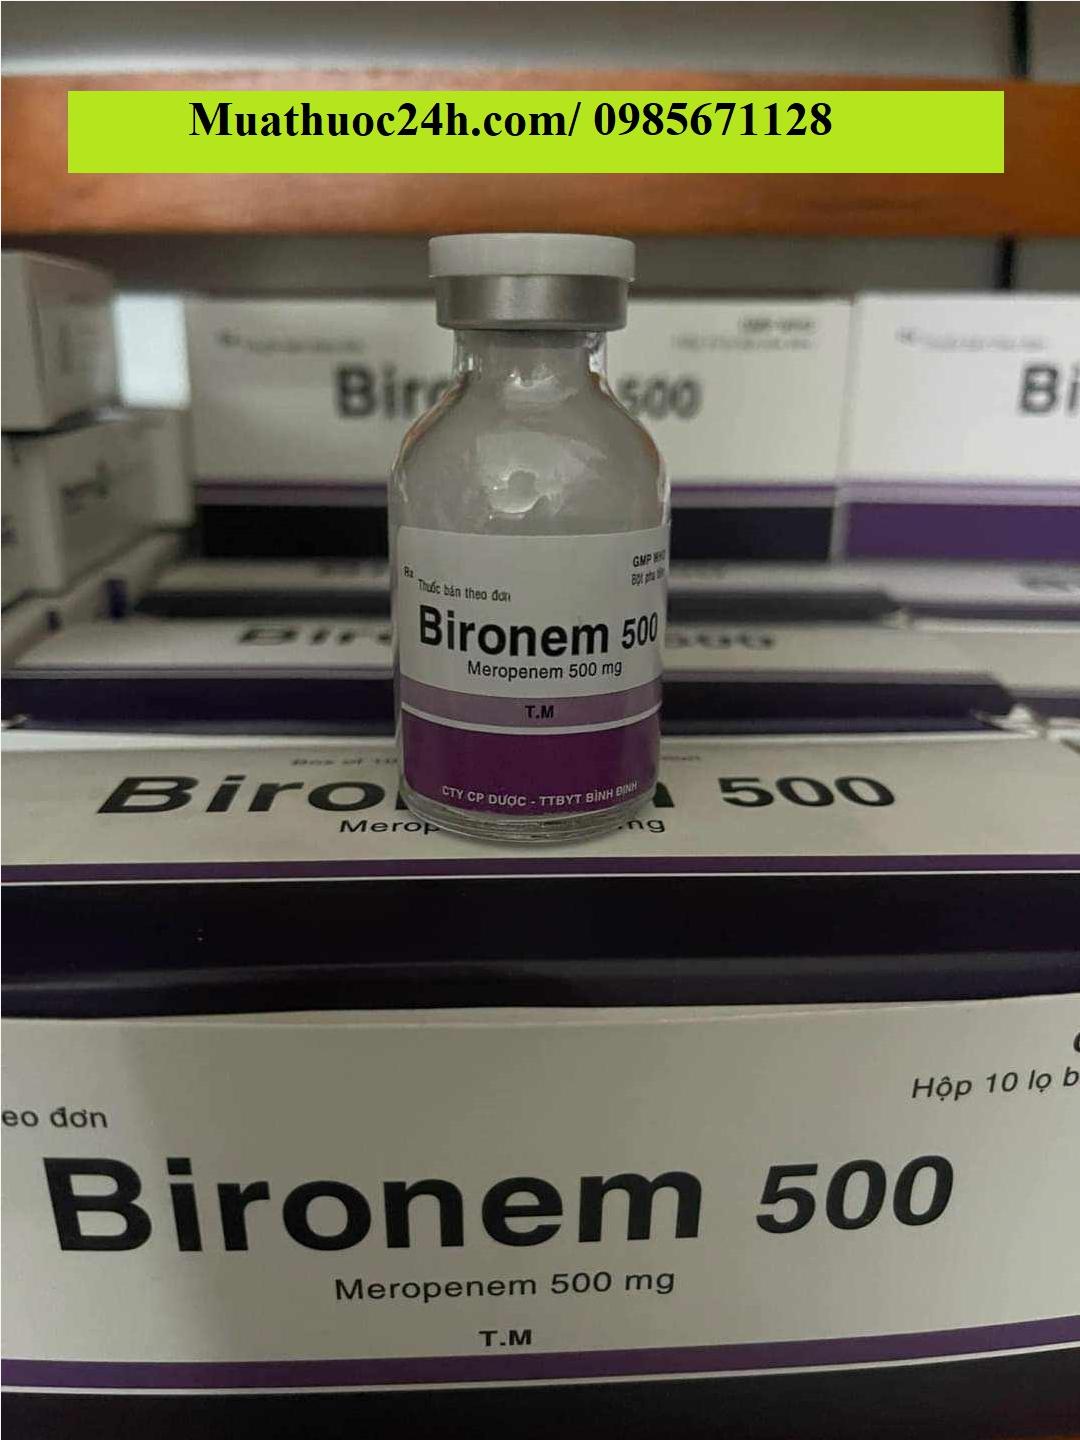 Thuốc Bironem 500 Meropenem giá bao nhiêu mua ở đâu